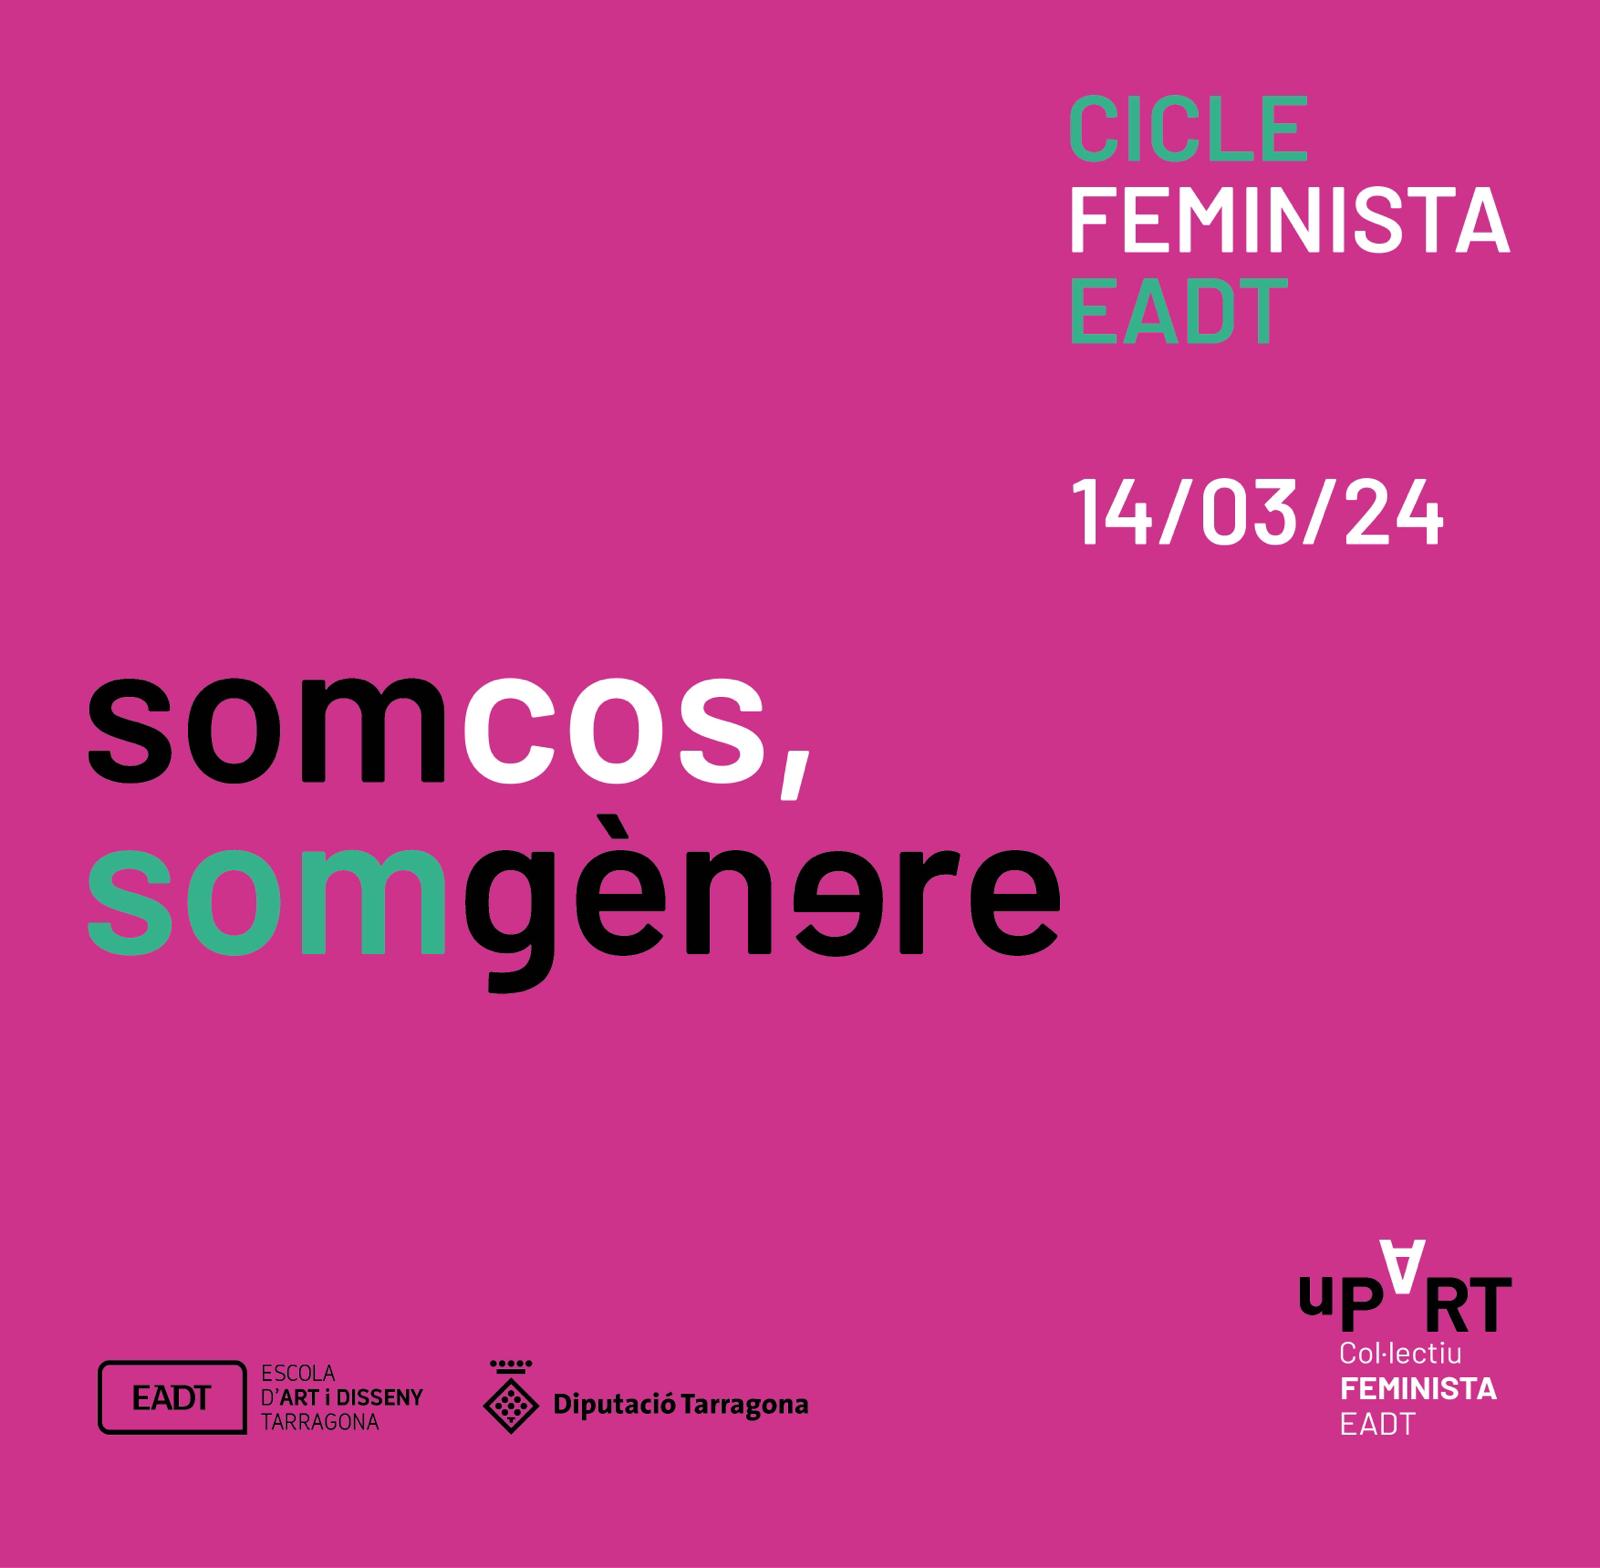 jornada  feminista EADTarragona: Som cos, som gènere